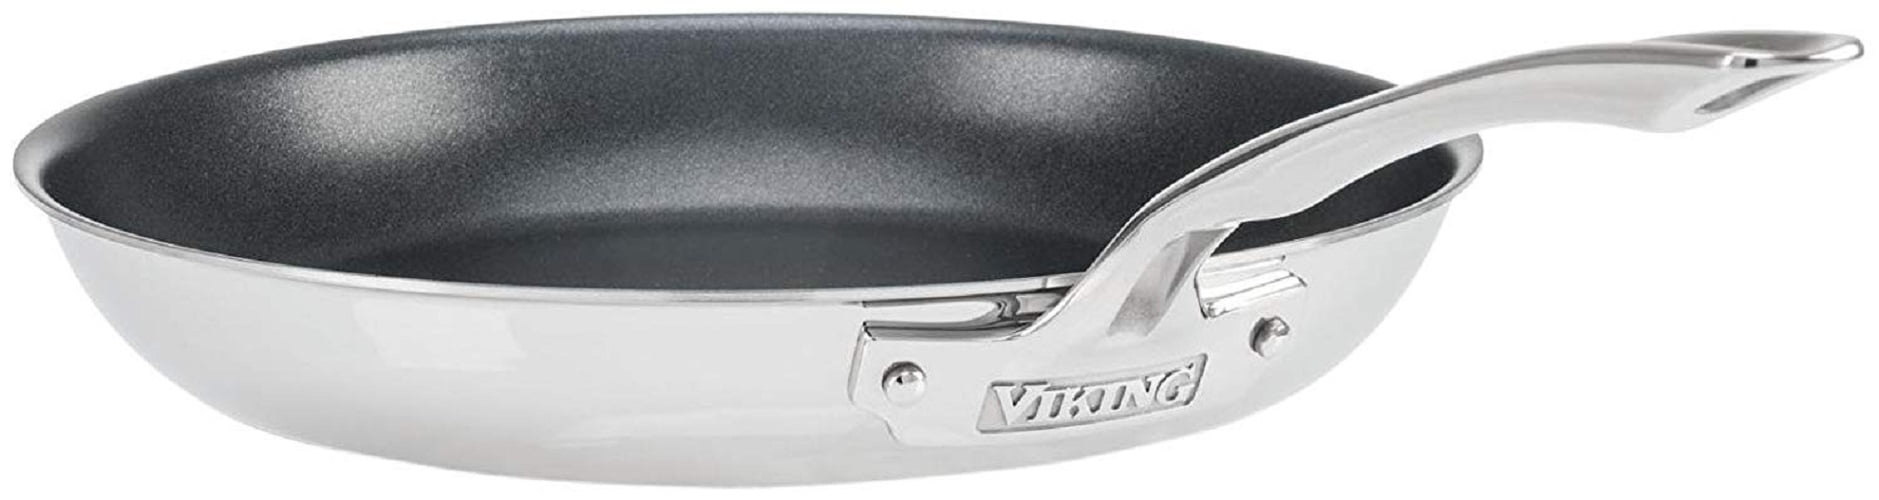 Viking Hybrid Plus Nonstick Skillet